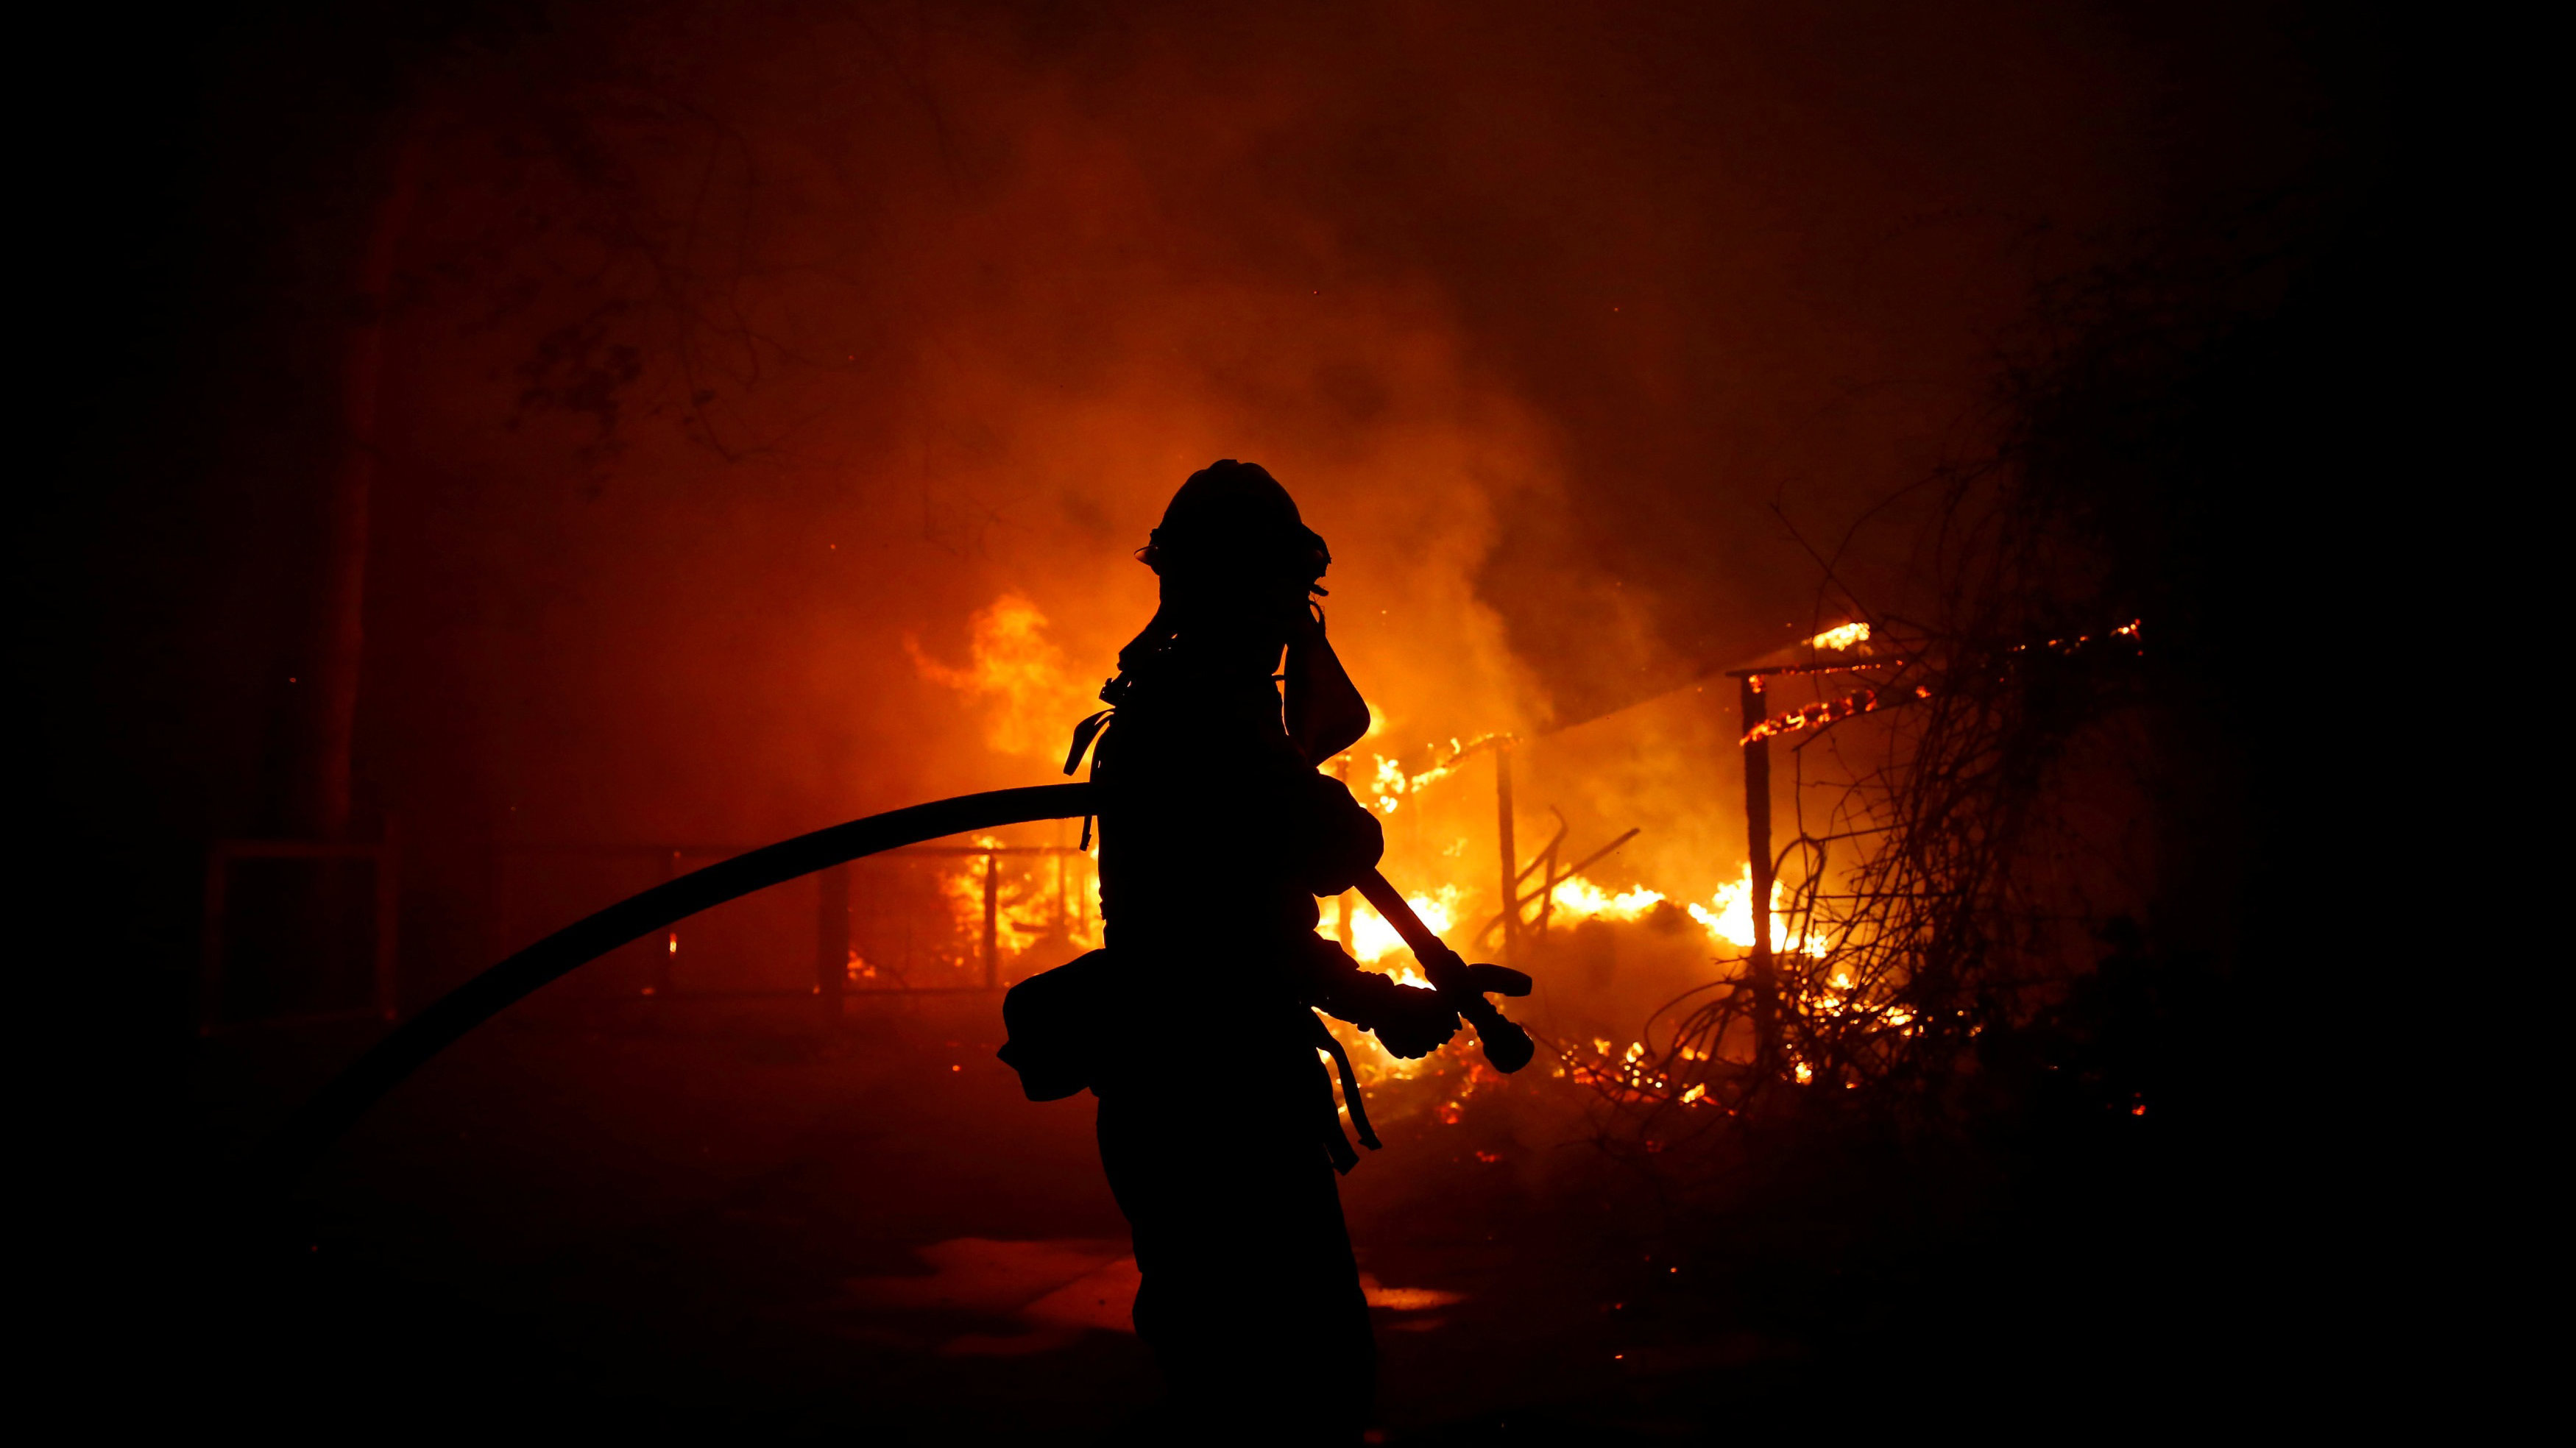   أمريكا: حرائق كاليفورنيا تسببت بخسائر 9 مليارات دولار